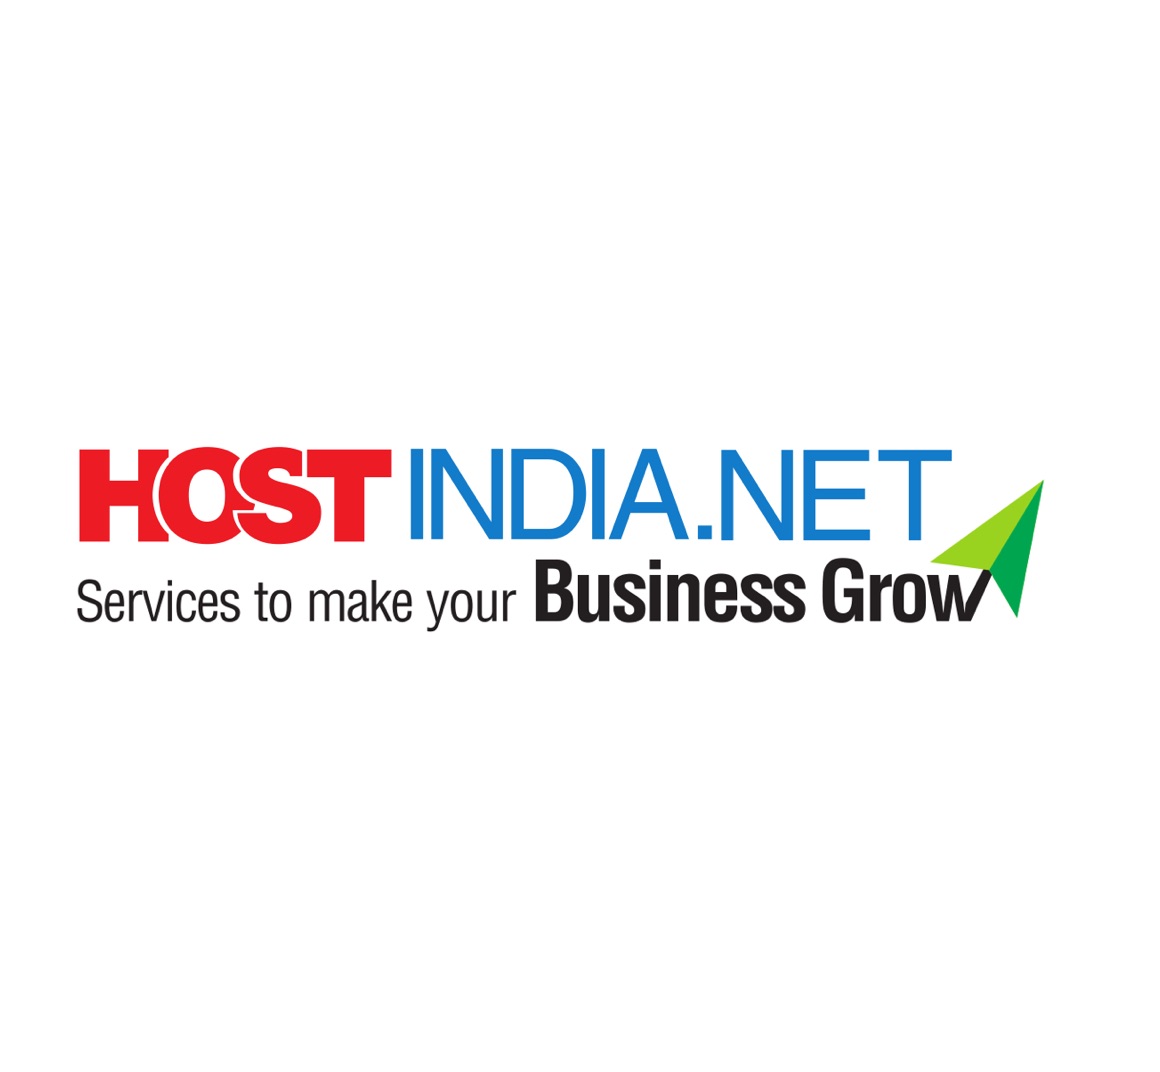 hostindia.net